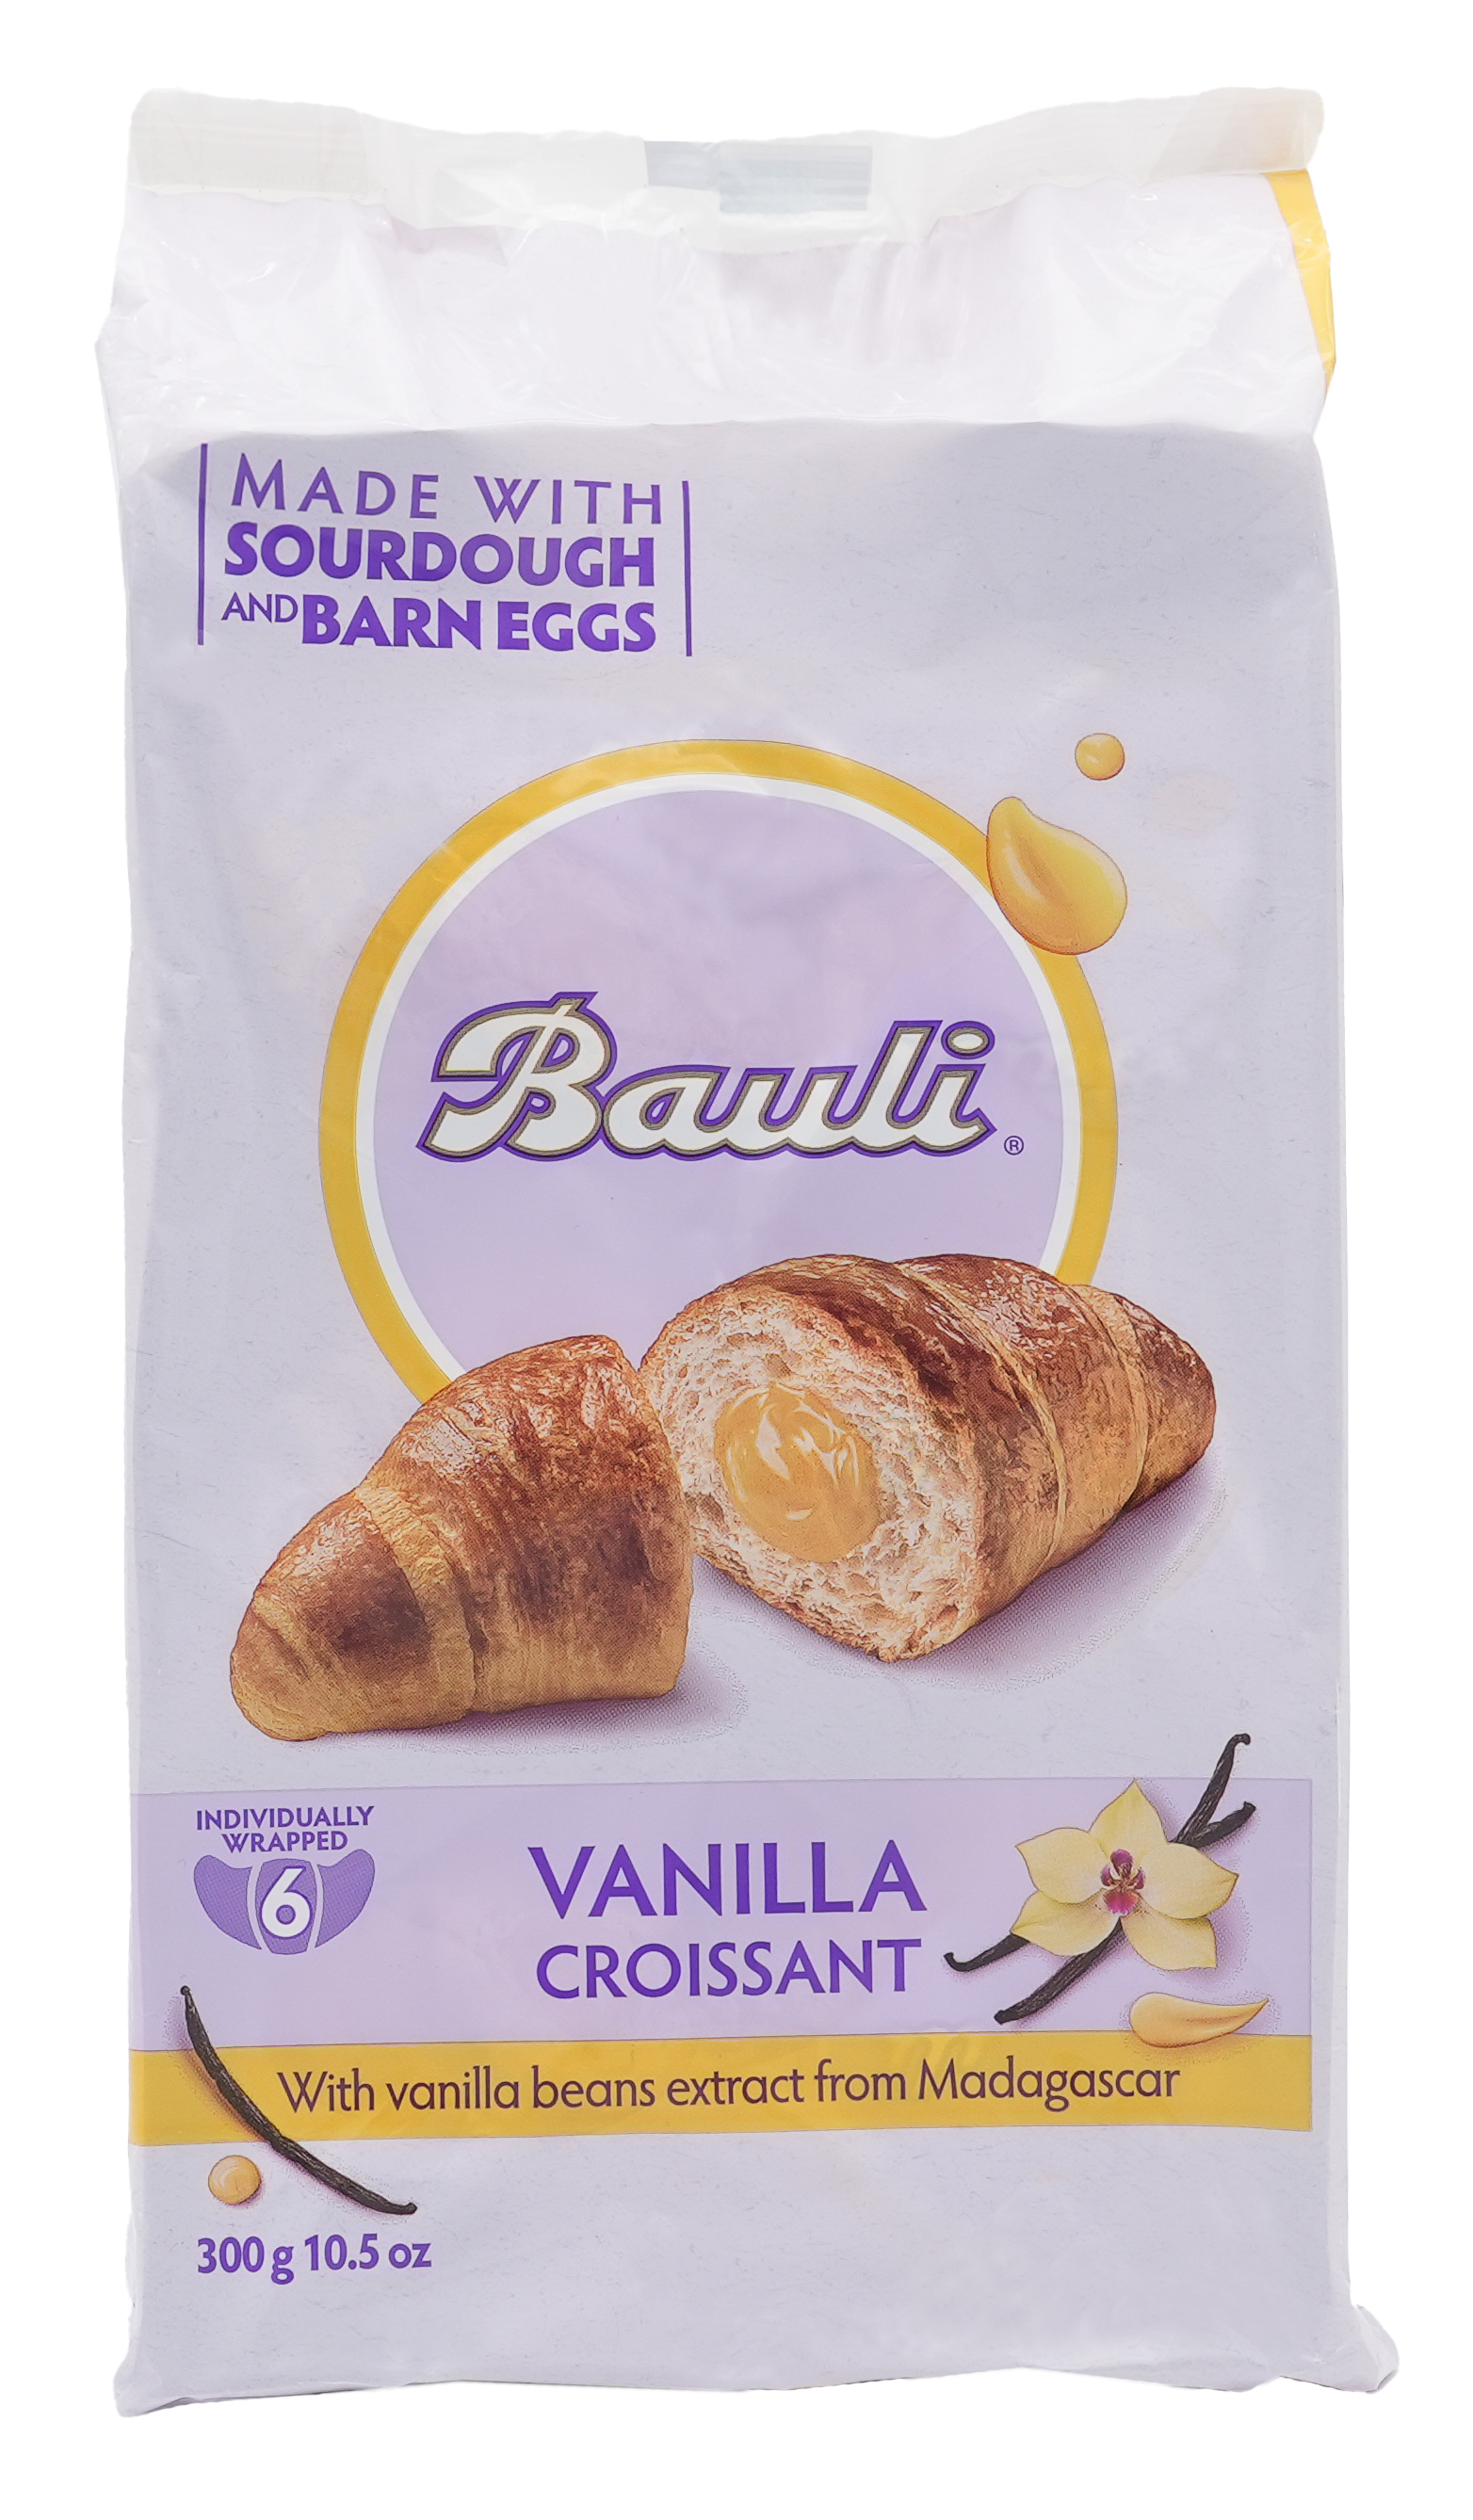 Vanilla Croissant | Croissant mit Vanillecremefüllung | BAULI | 300g | aus Italien | Gebäck